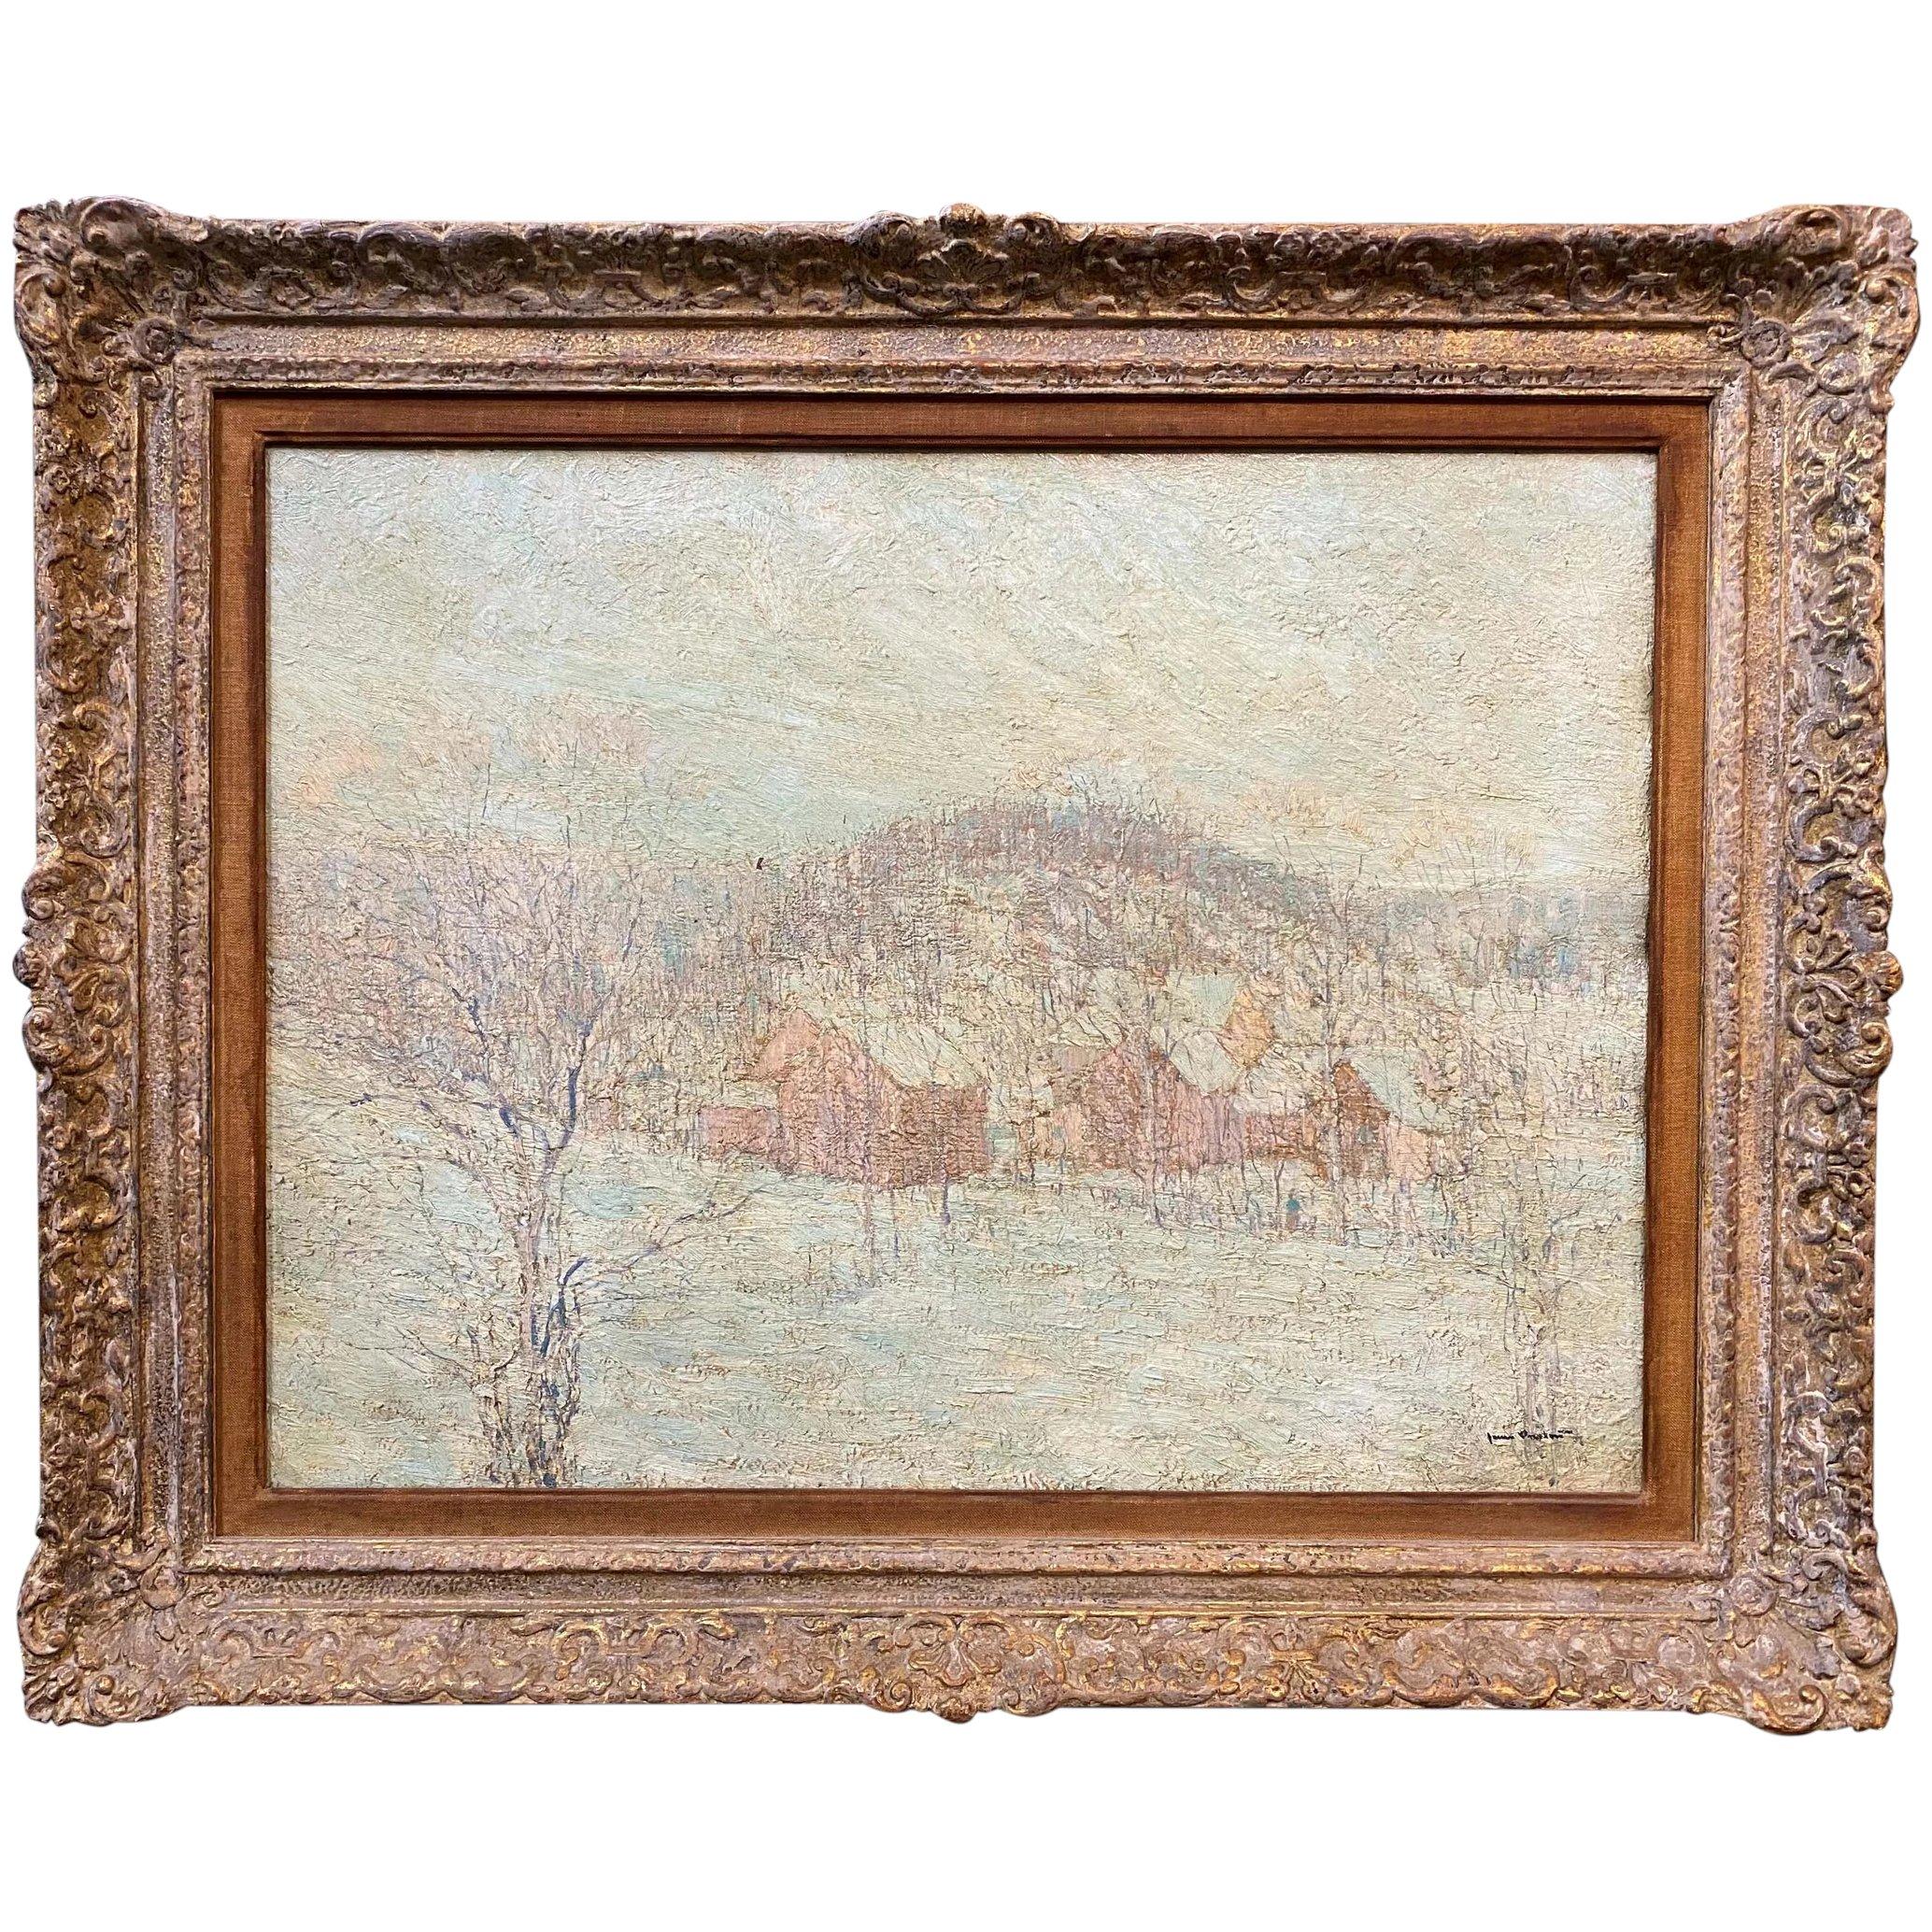 James Preston Landscape Painting - Winter Landscape with Houses